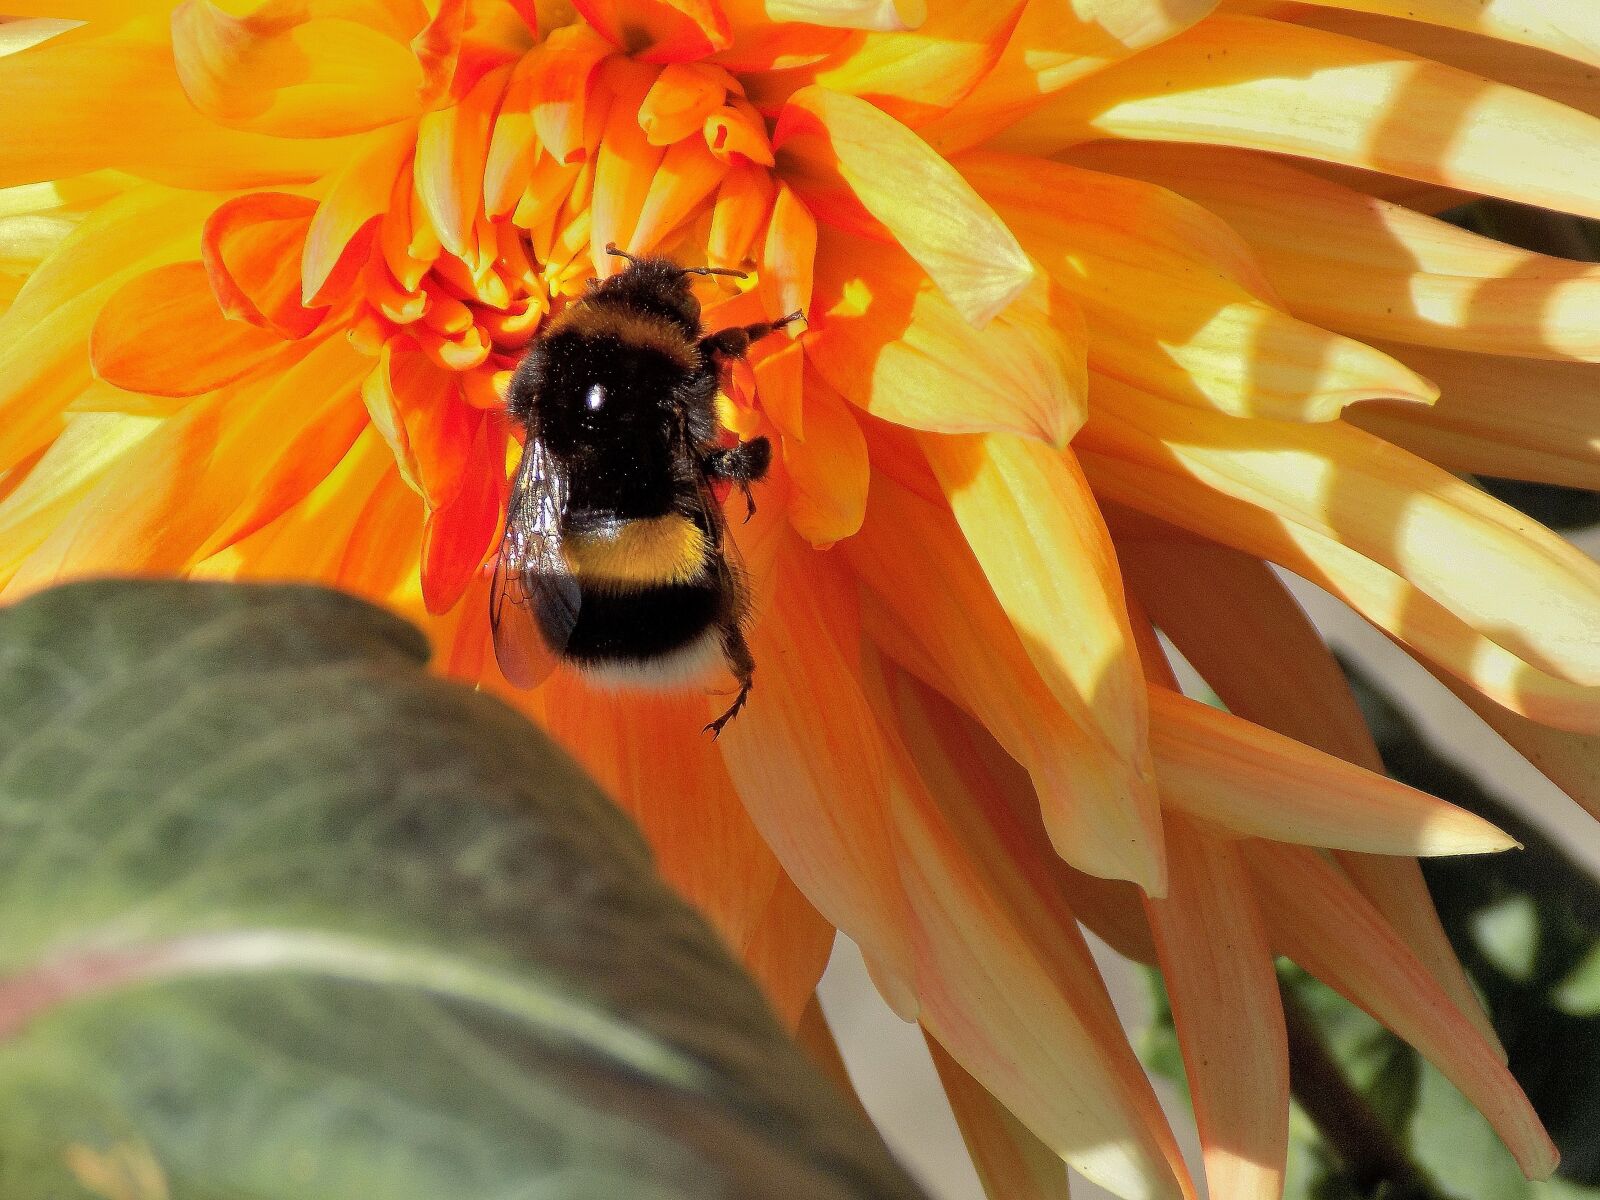 Nikon COOLPIX L330 sample photo. Dahlia, bumblebee, nature photography